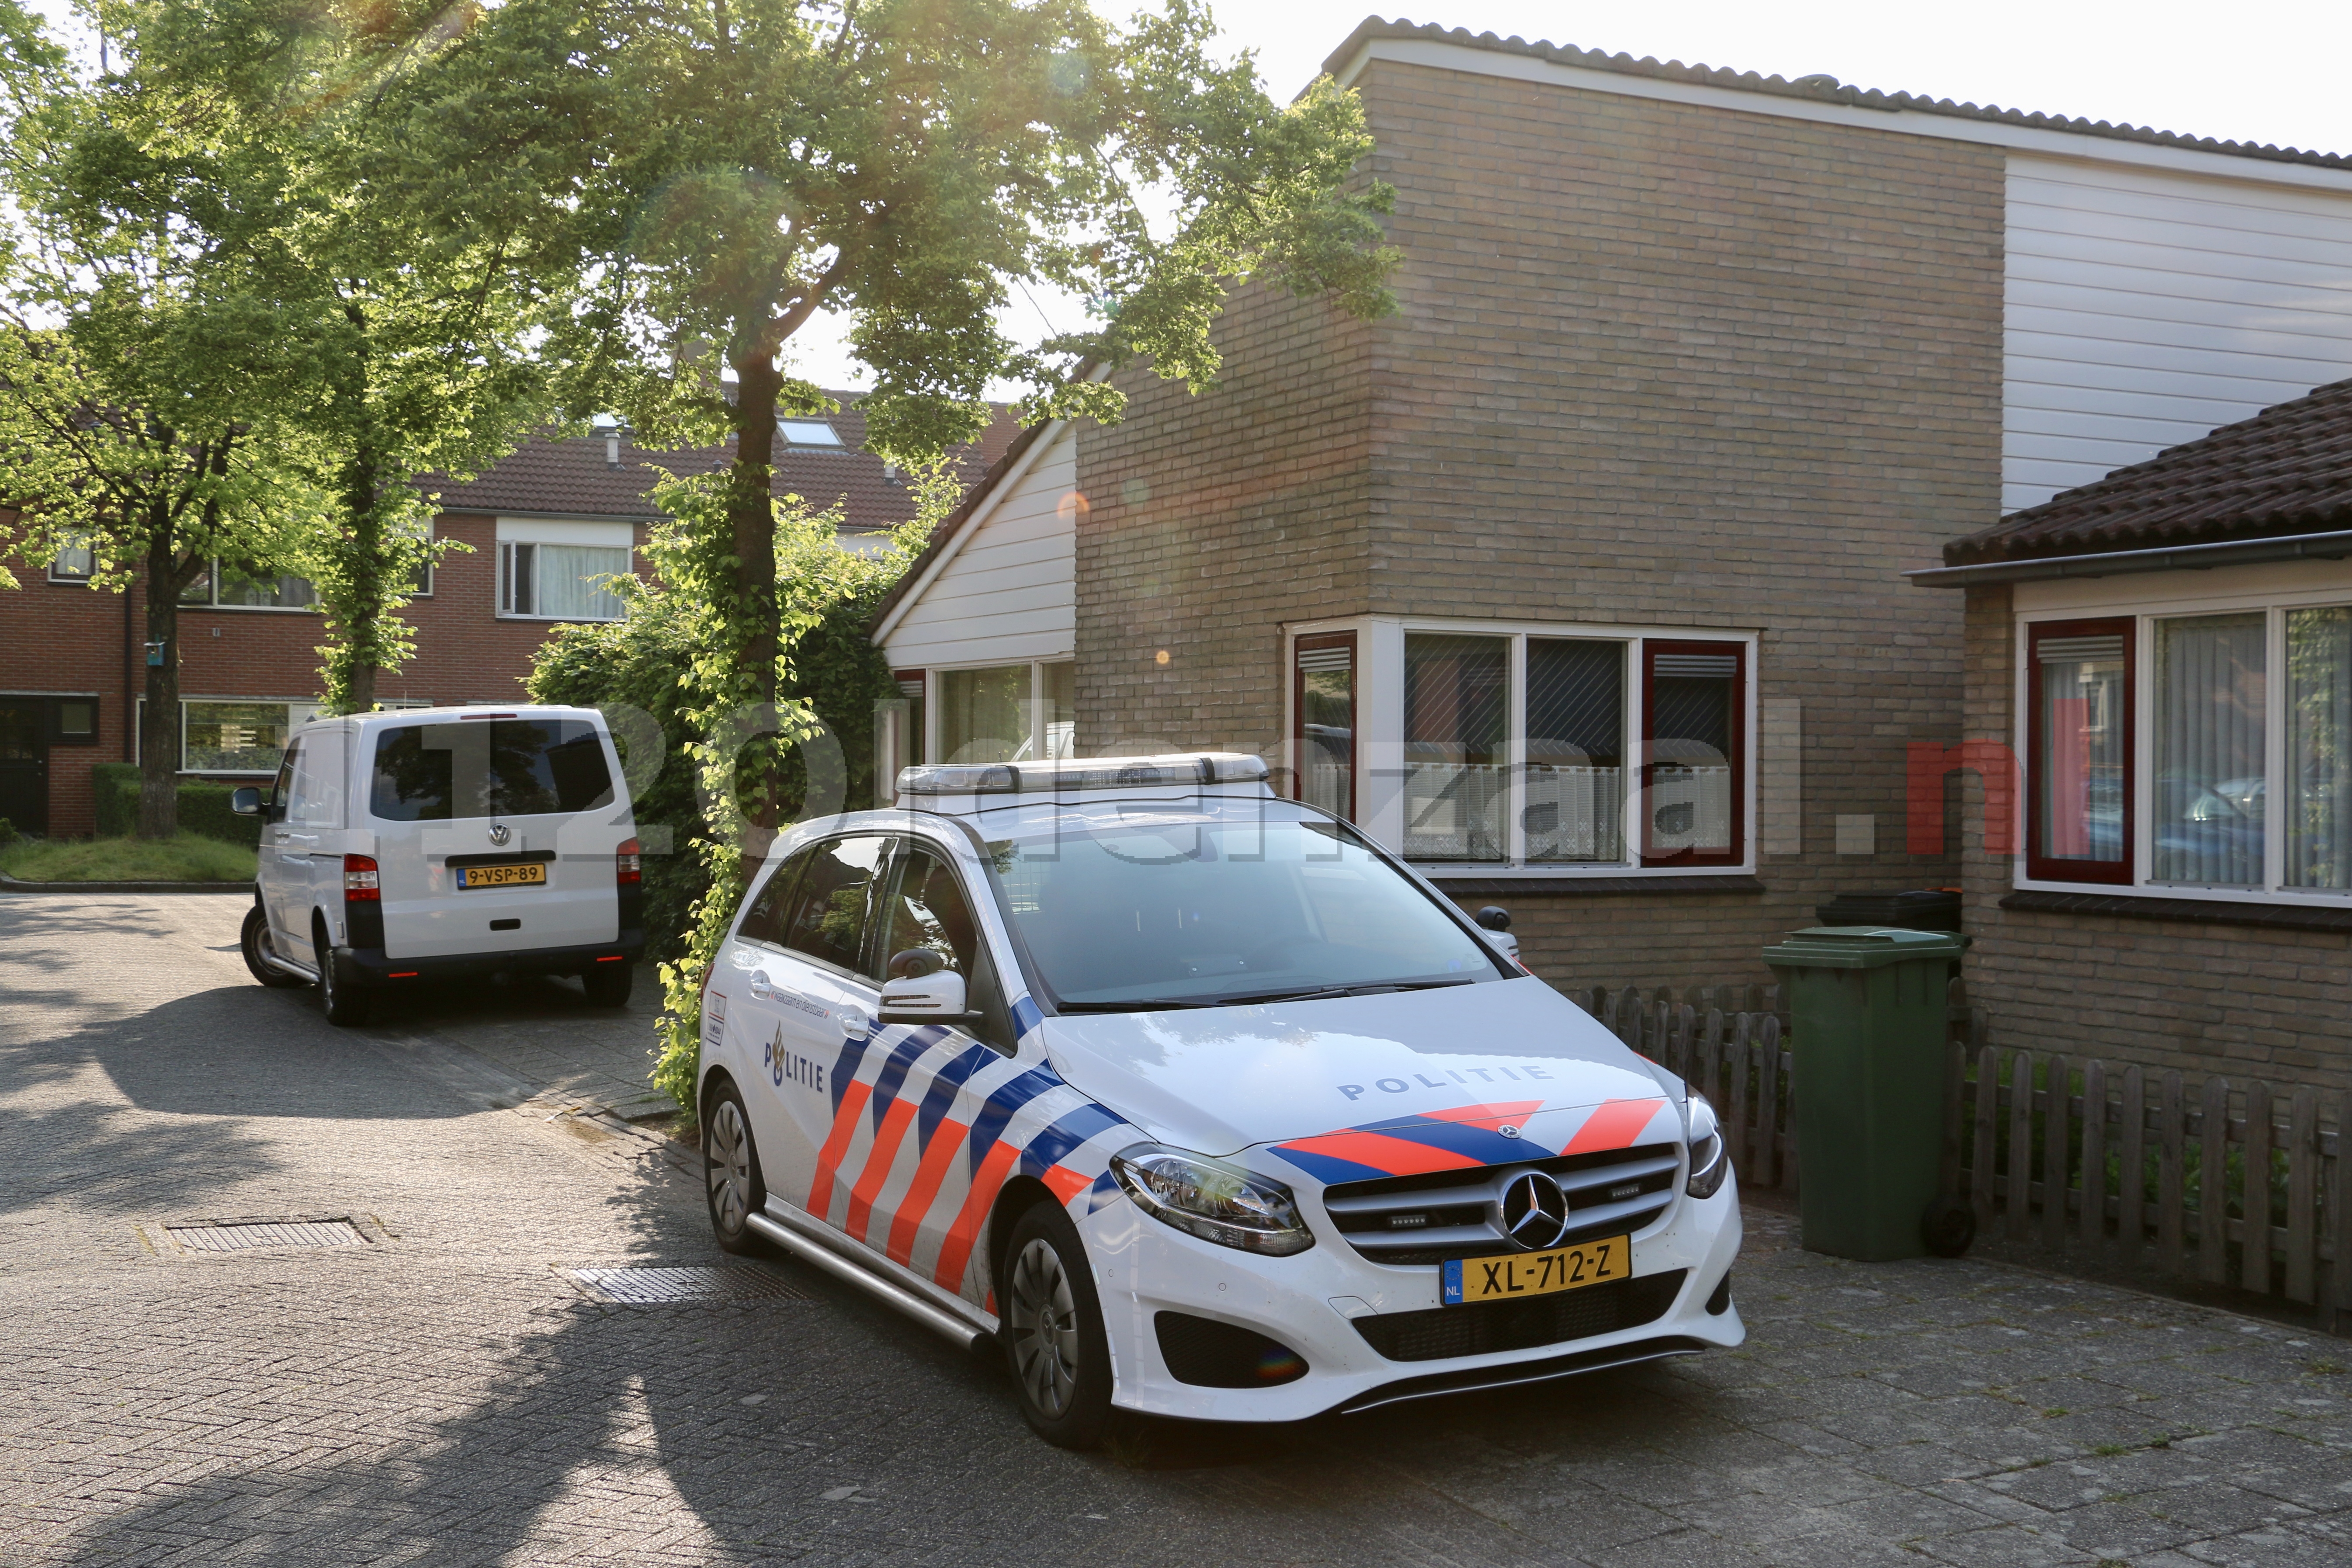 Video: Politie doet onderzoek in woning Oldenzaal na aantreffen overleden persoon